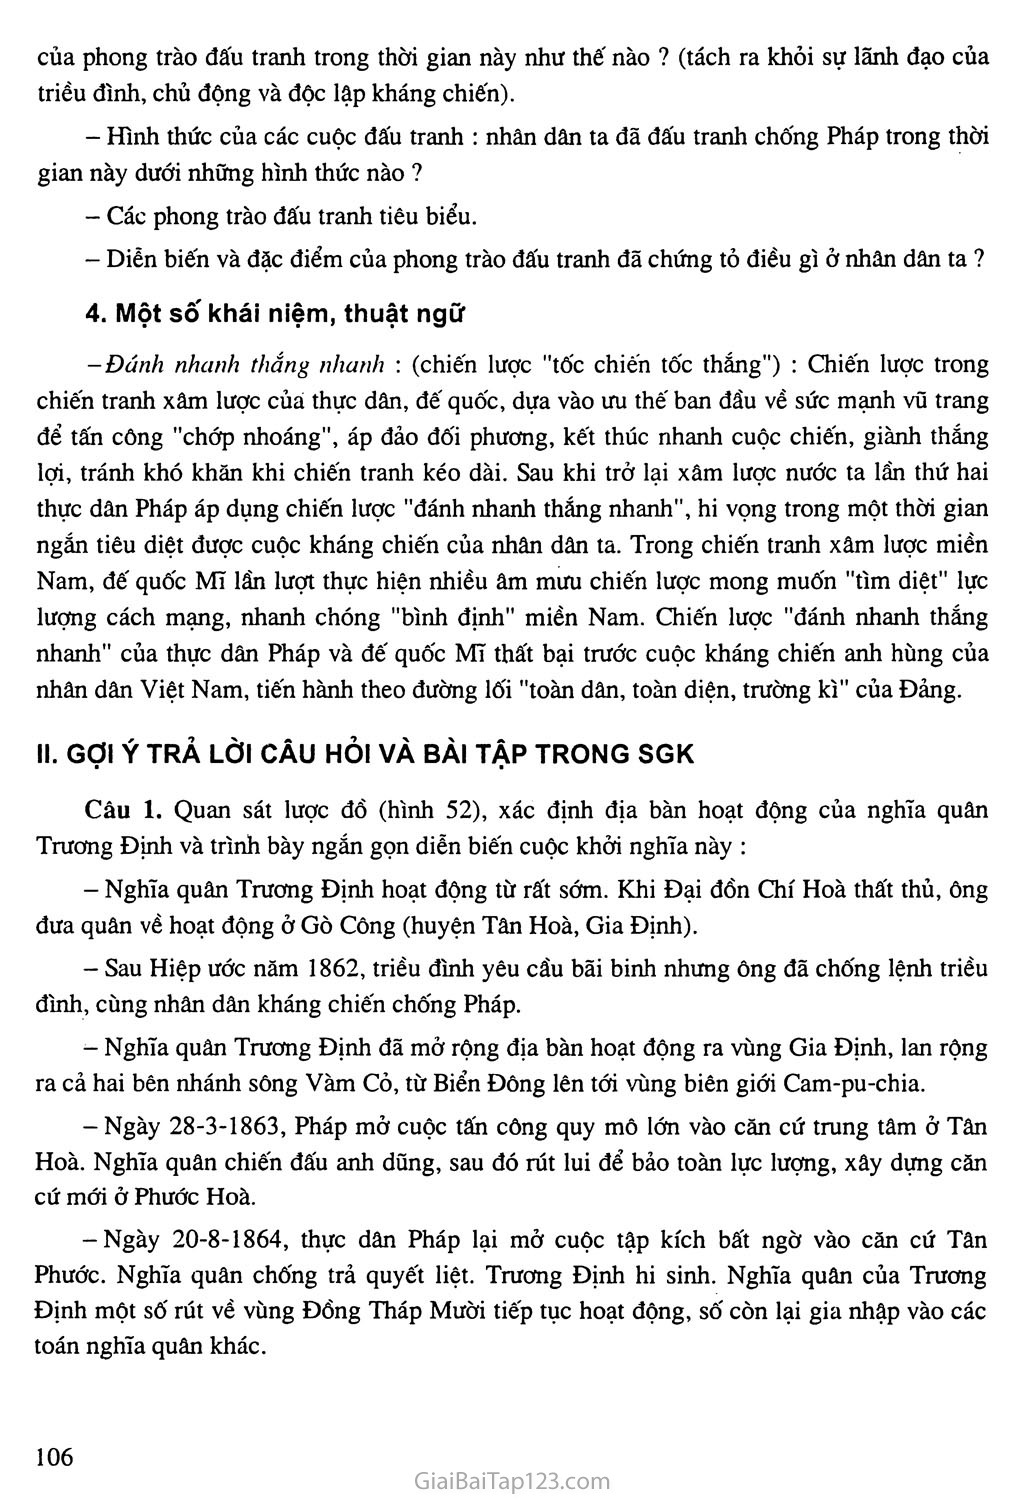 Bài 19: Nhân dân Việt Nam kháng chiến chống thực dân Pháp xâm lược (từ năm 1858 đến trước năm 1873) trang 6